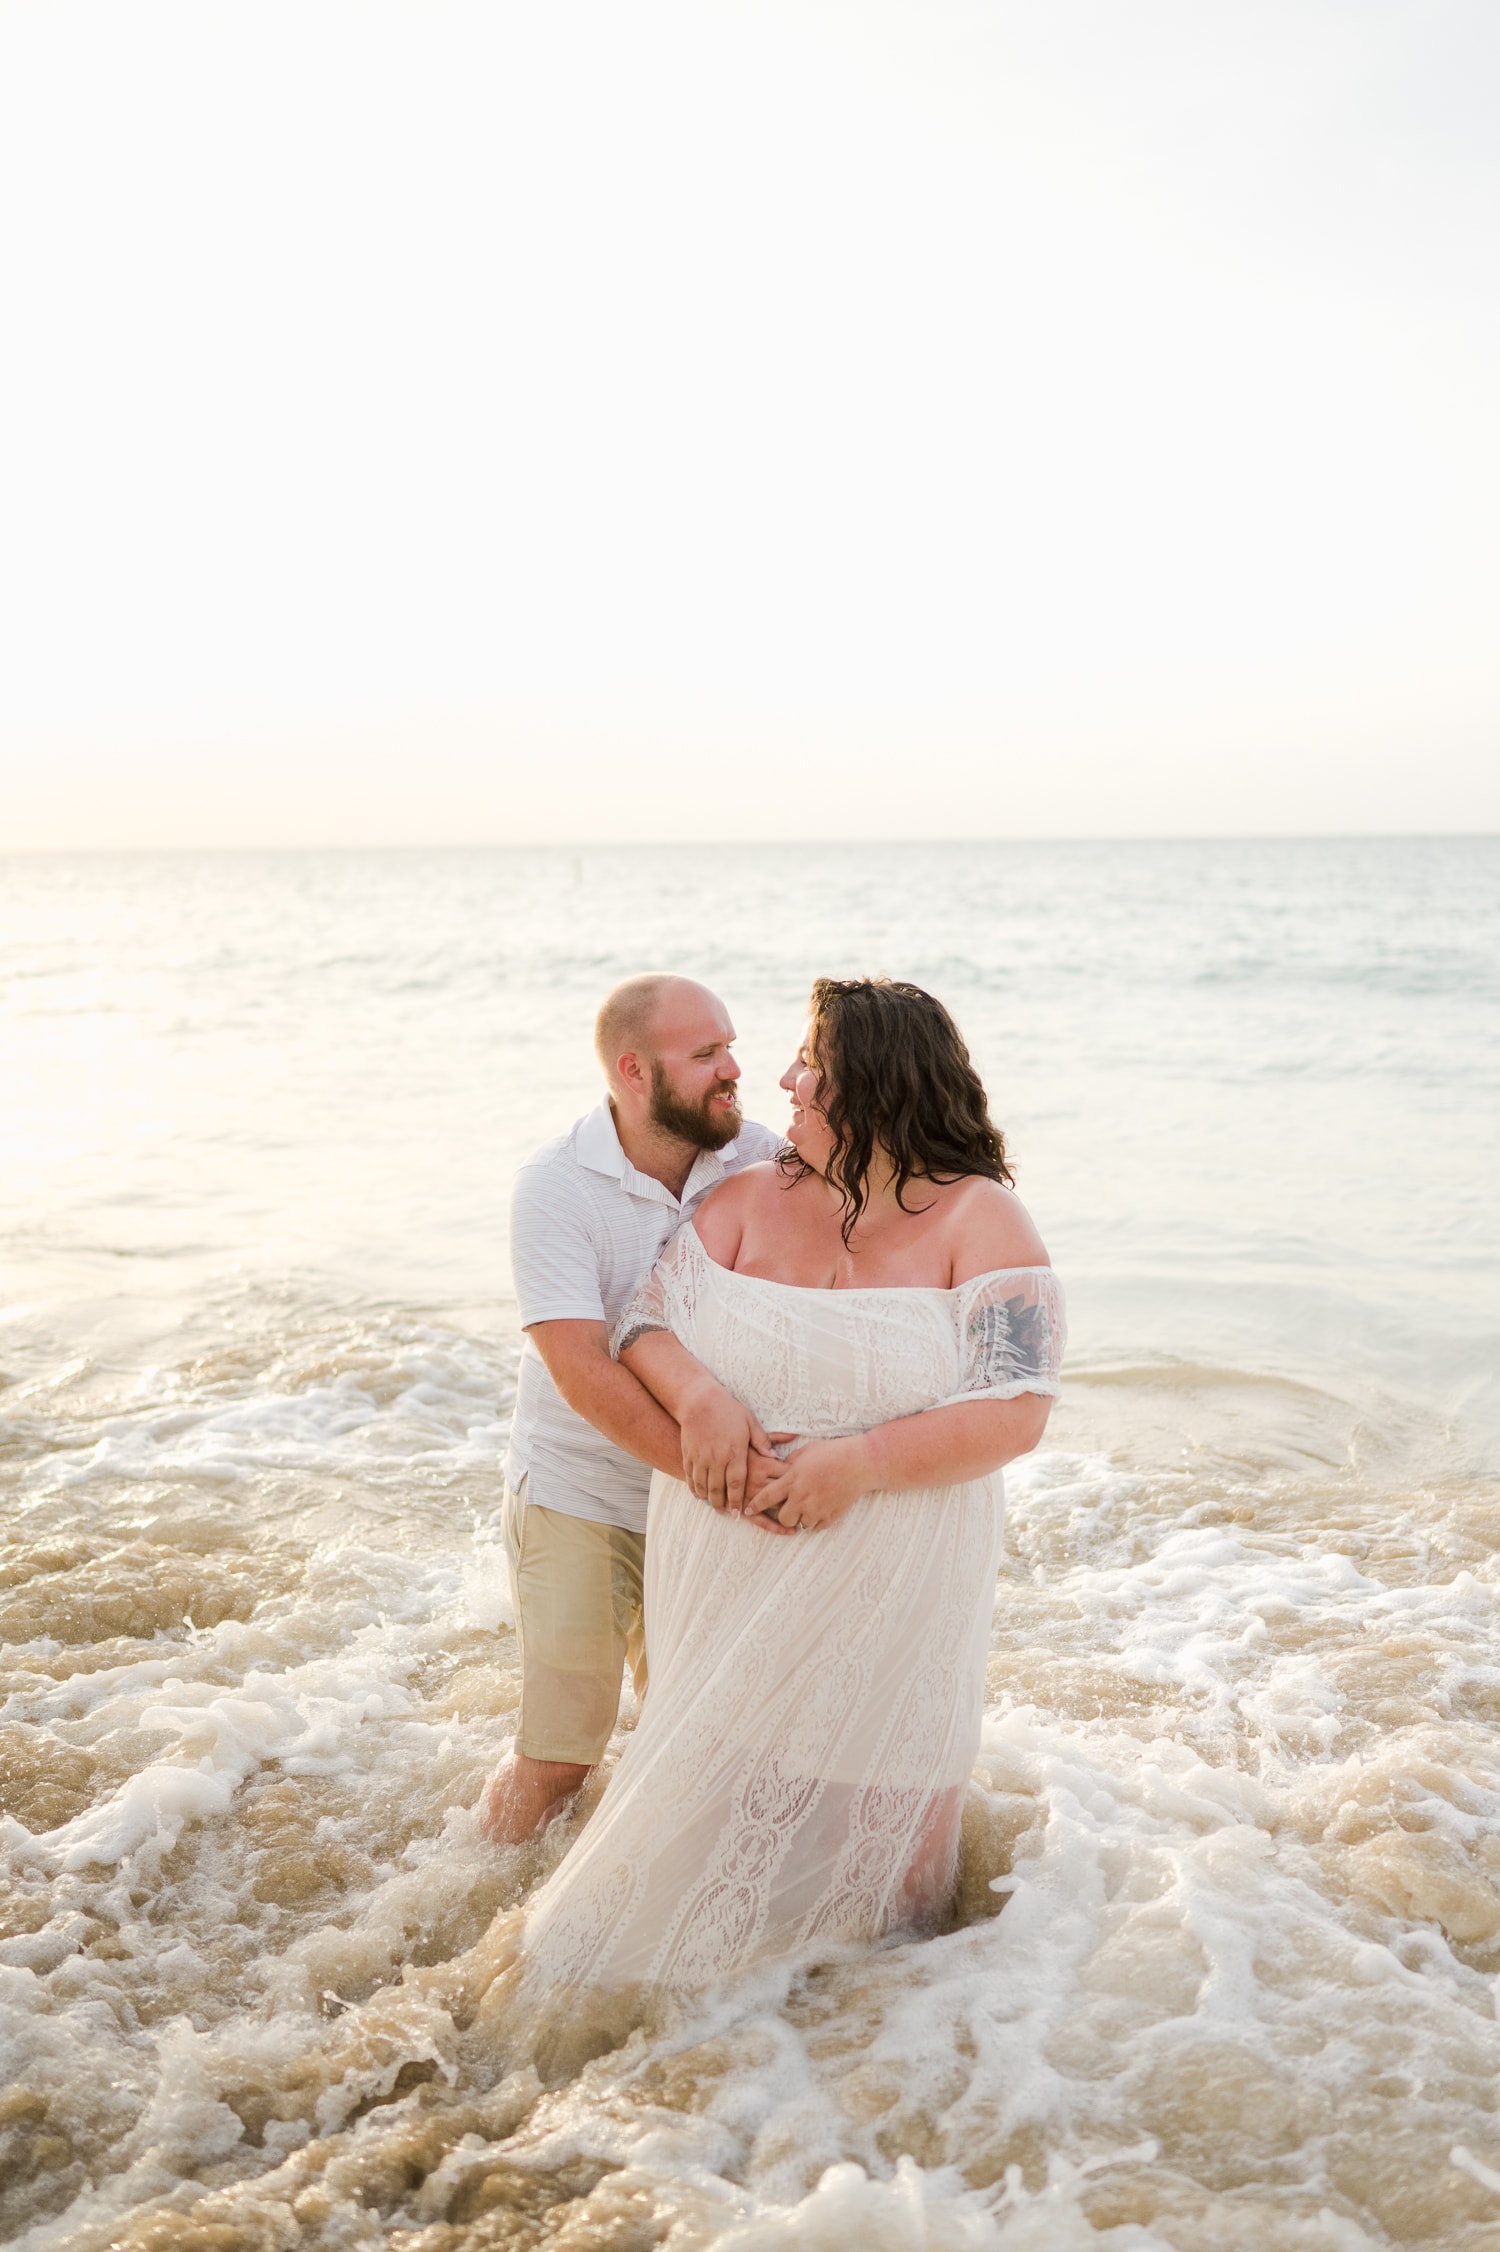 honeymoon anniversary photoshoot in royal sonesta beach resort in puerto rico